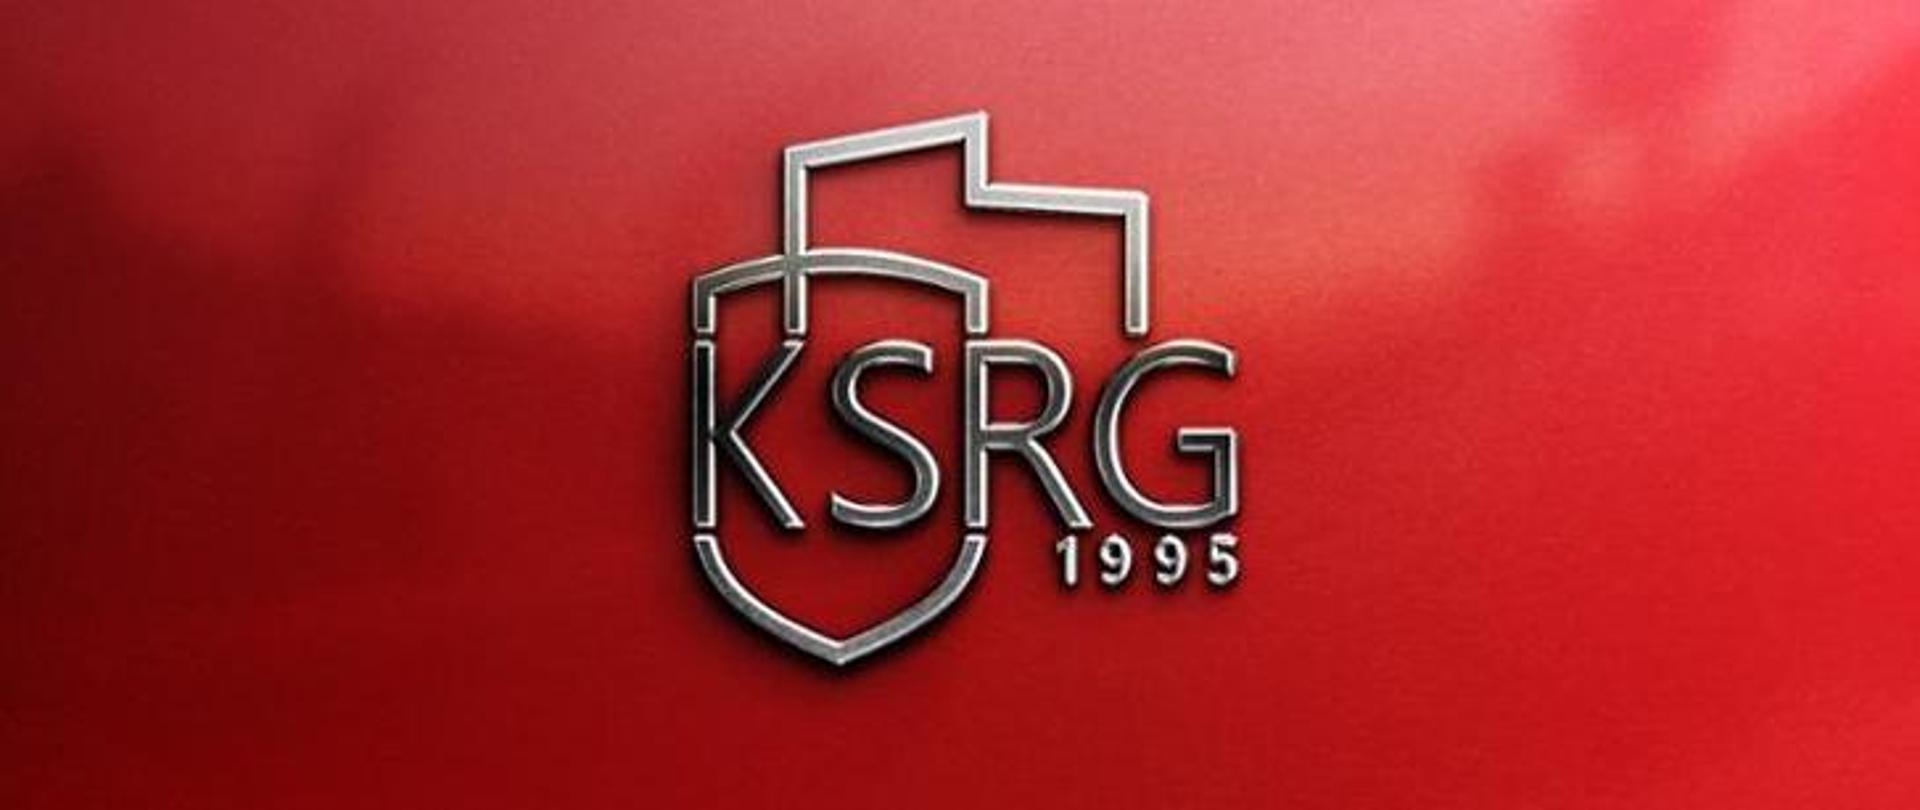 logotyp ksrg